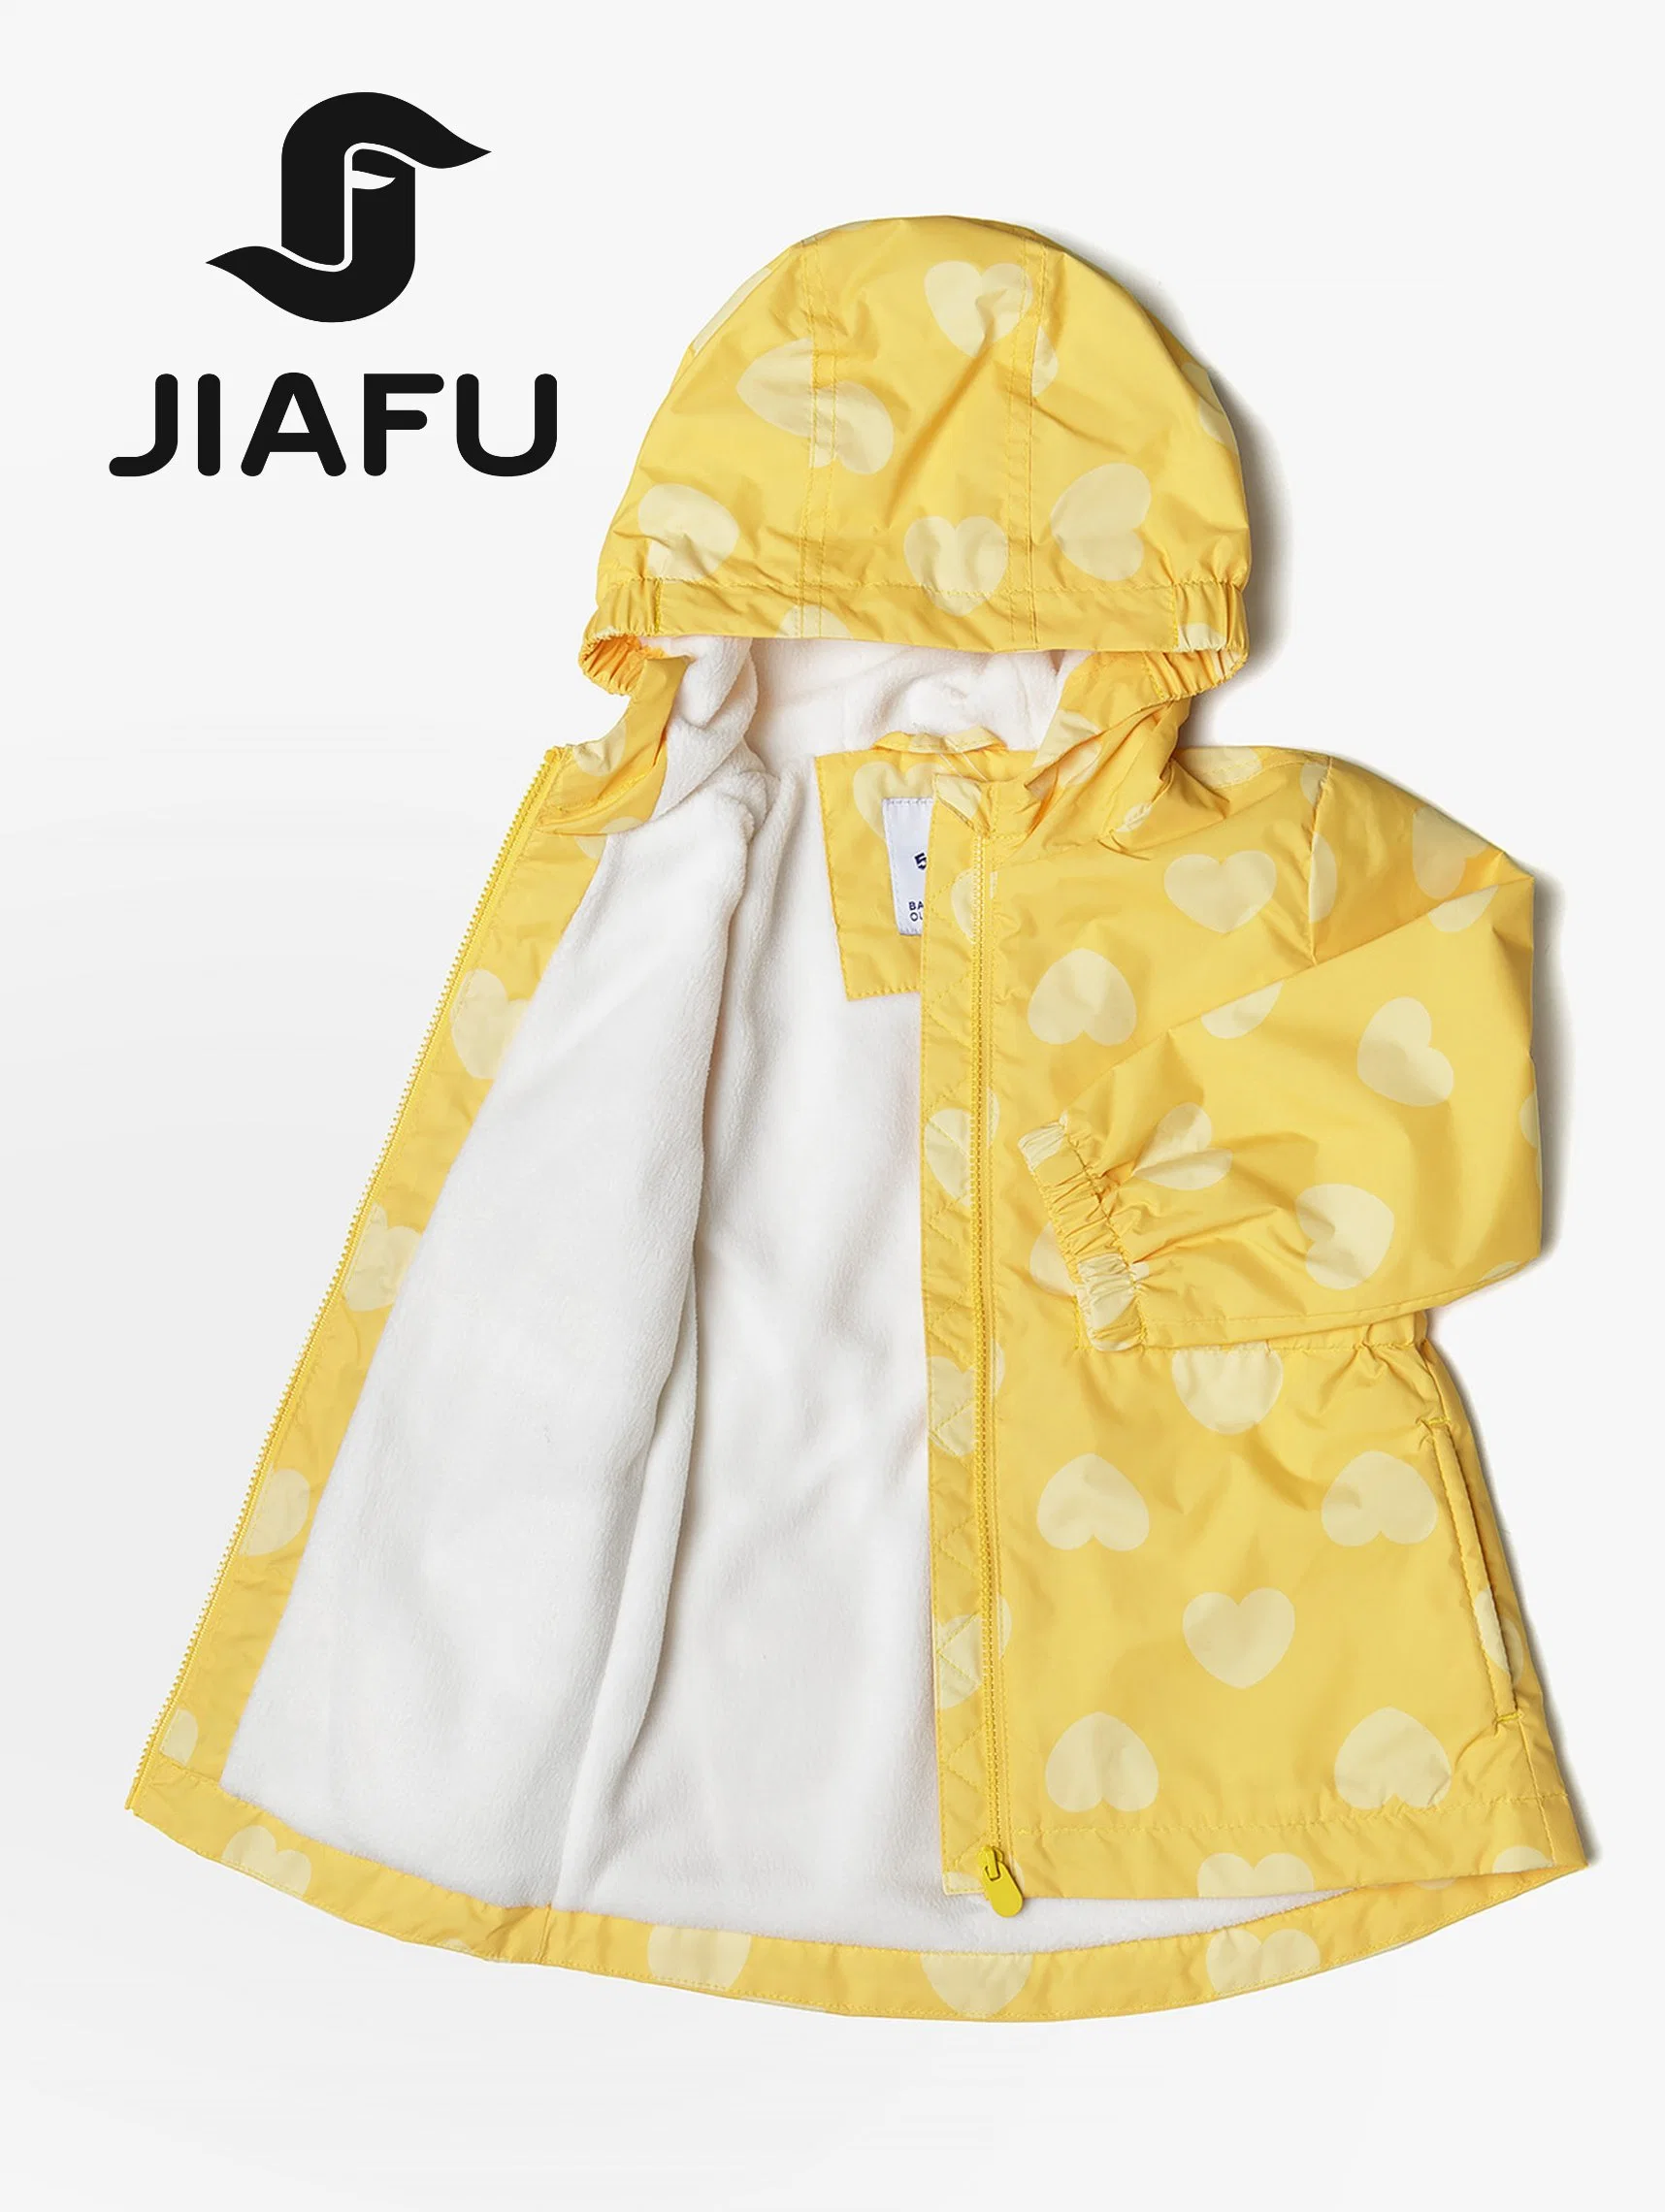 Fashion OEM Customized Baby Girl Clothing Hooded Coat Outerwear Kids Infant Jacket